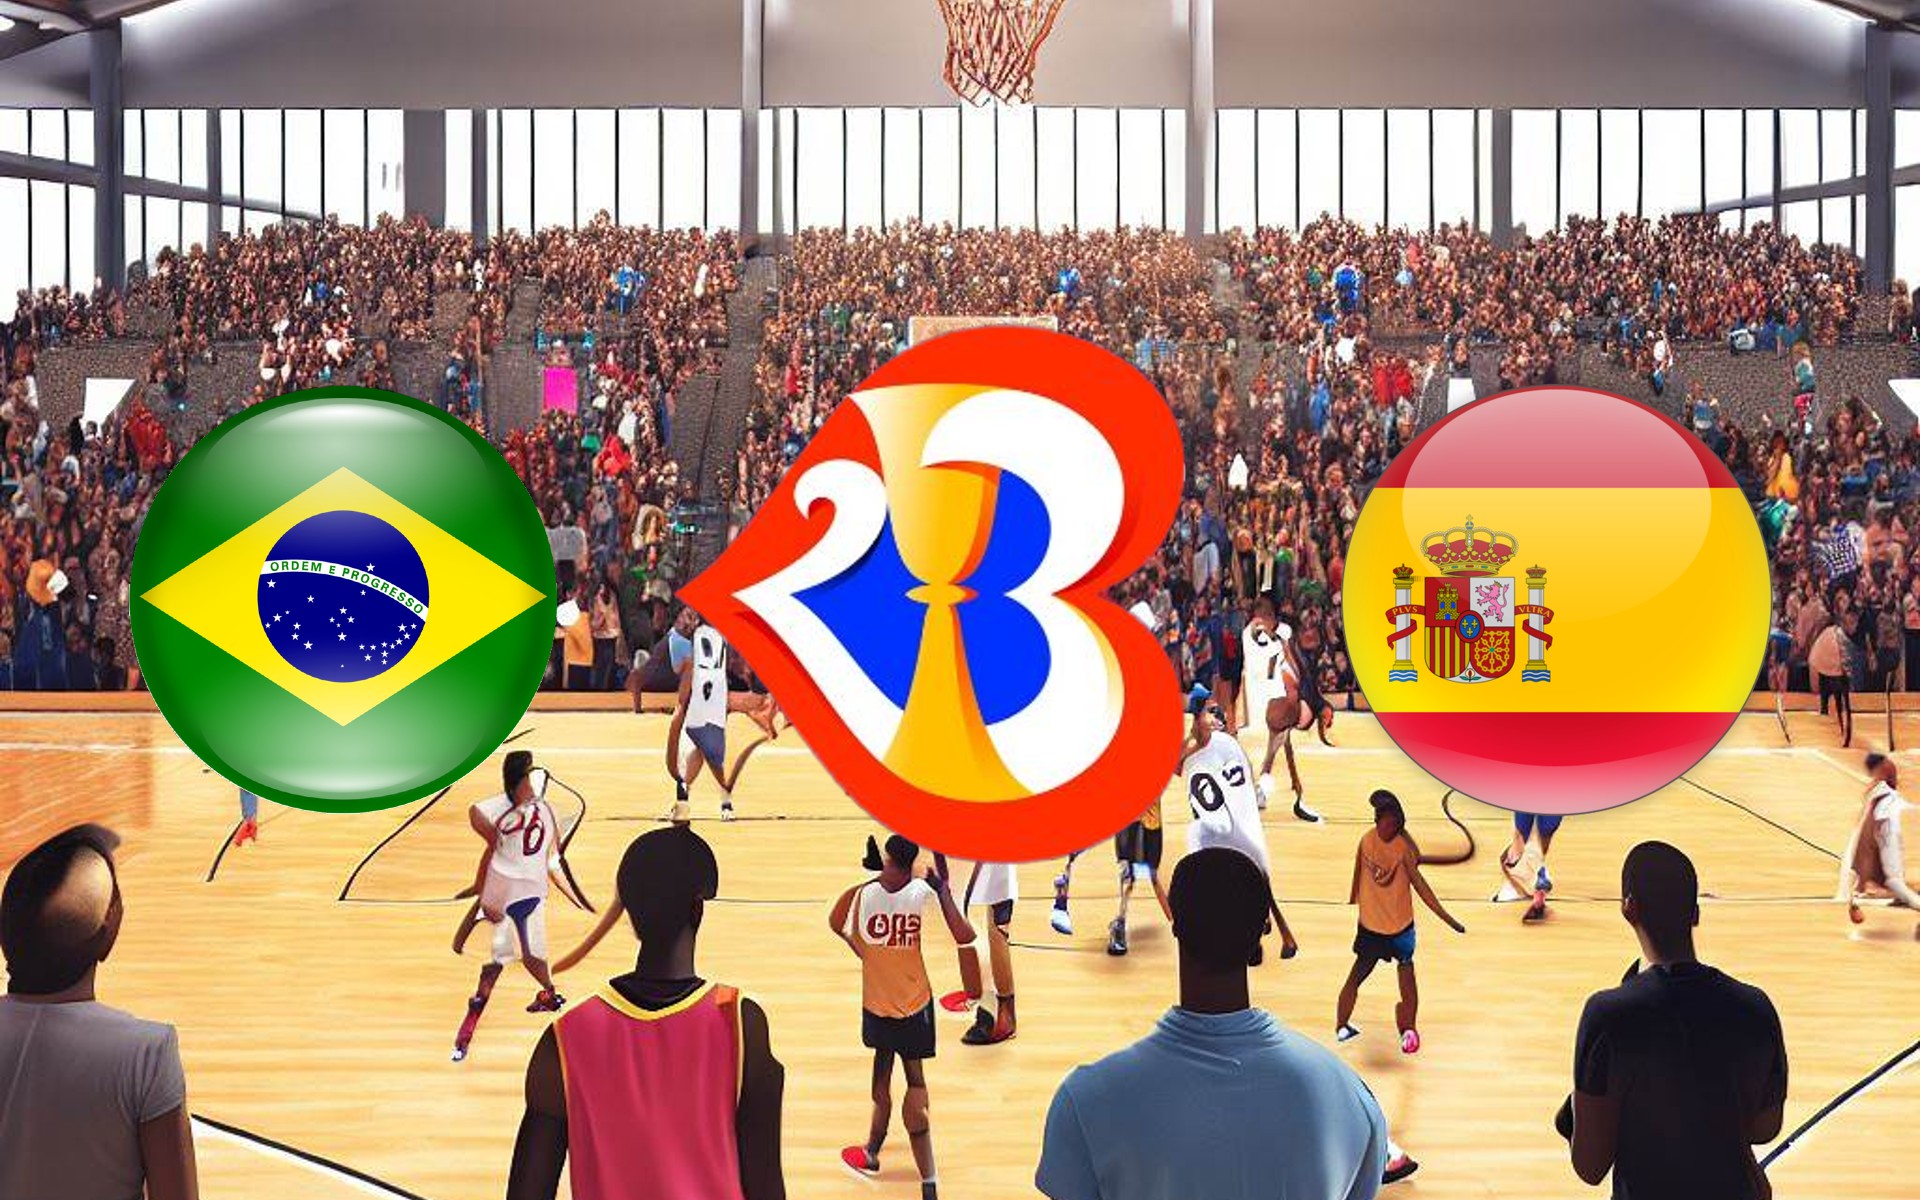 Cómo ver el partido de baloncesto Brasil-España en directo y gratis